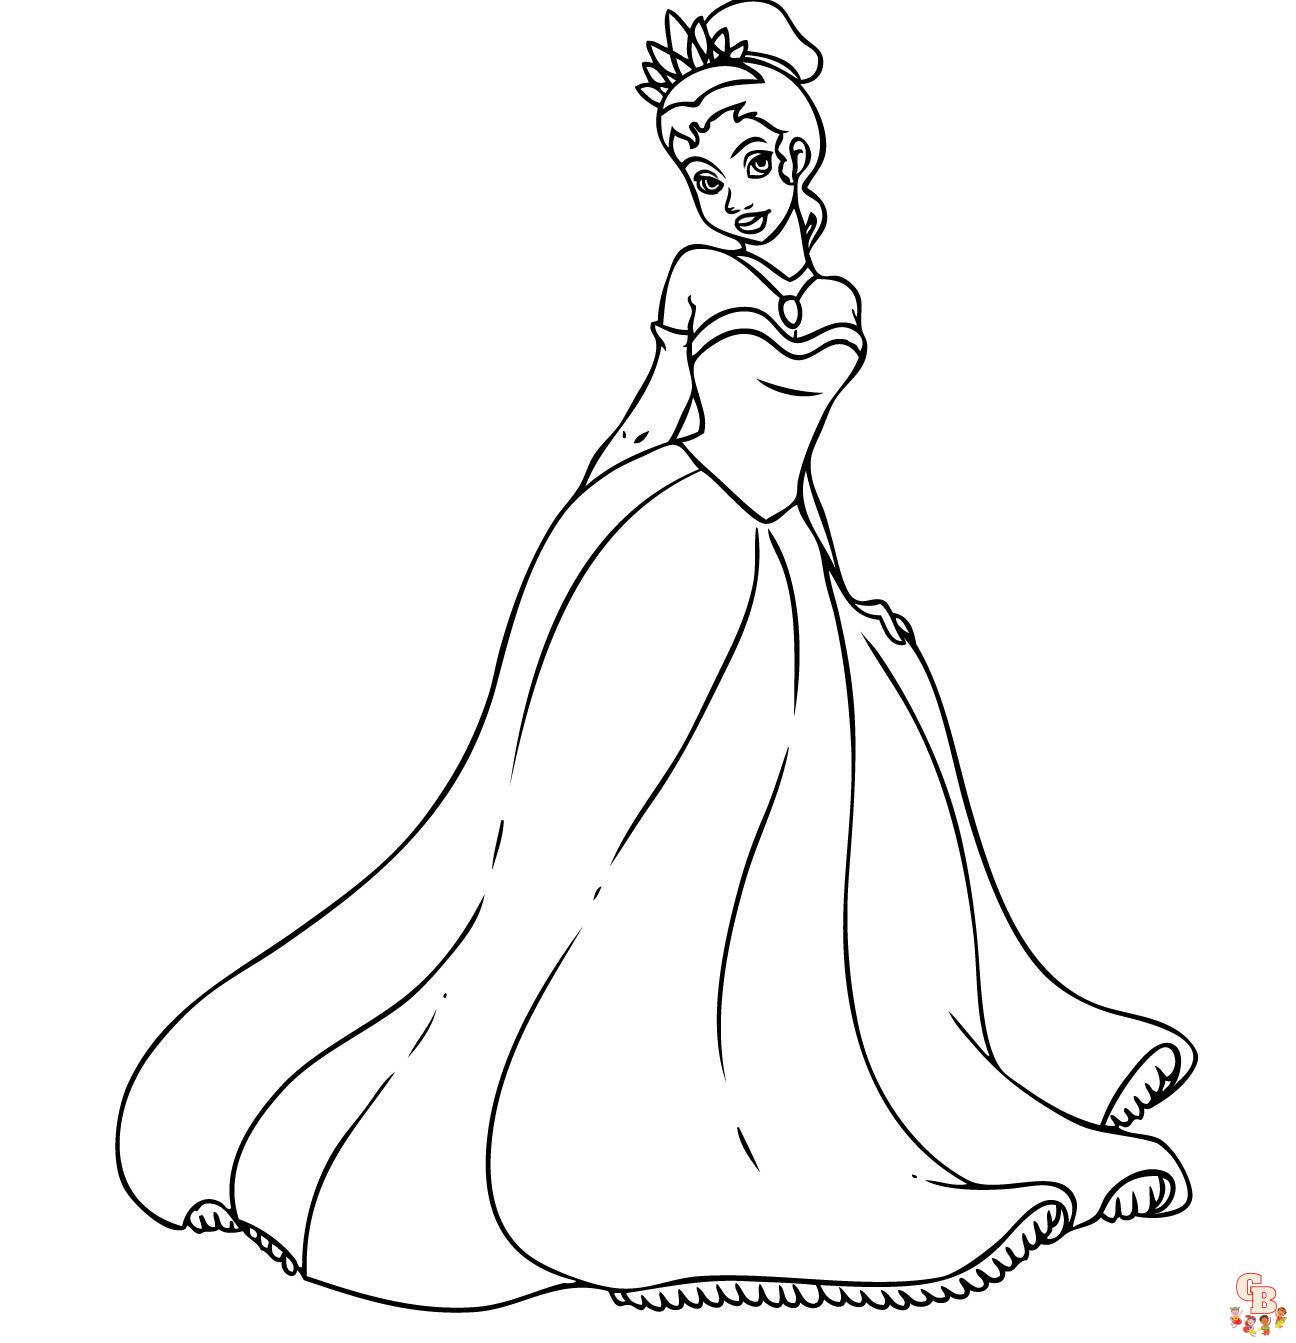 Dibujos para colorear de la princesa Tiana y el sapo 2